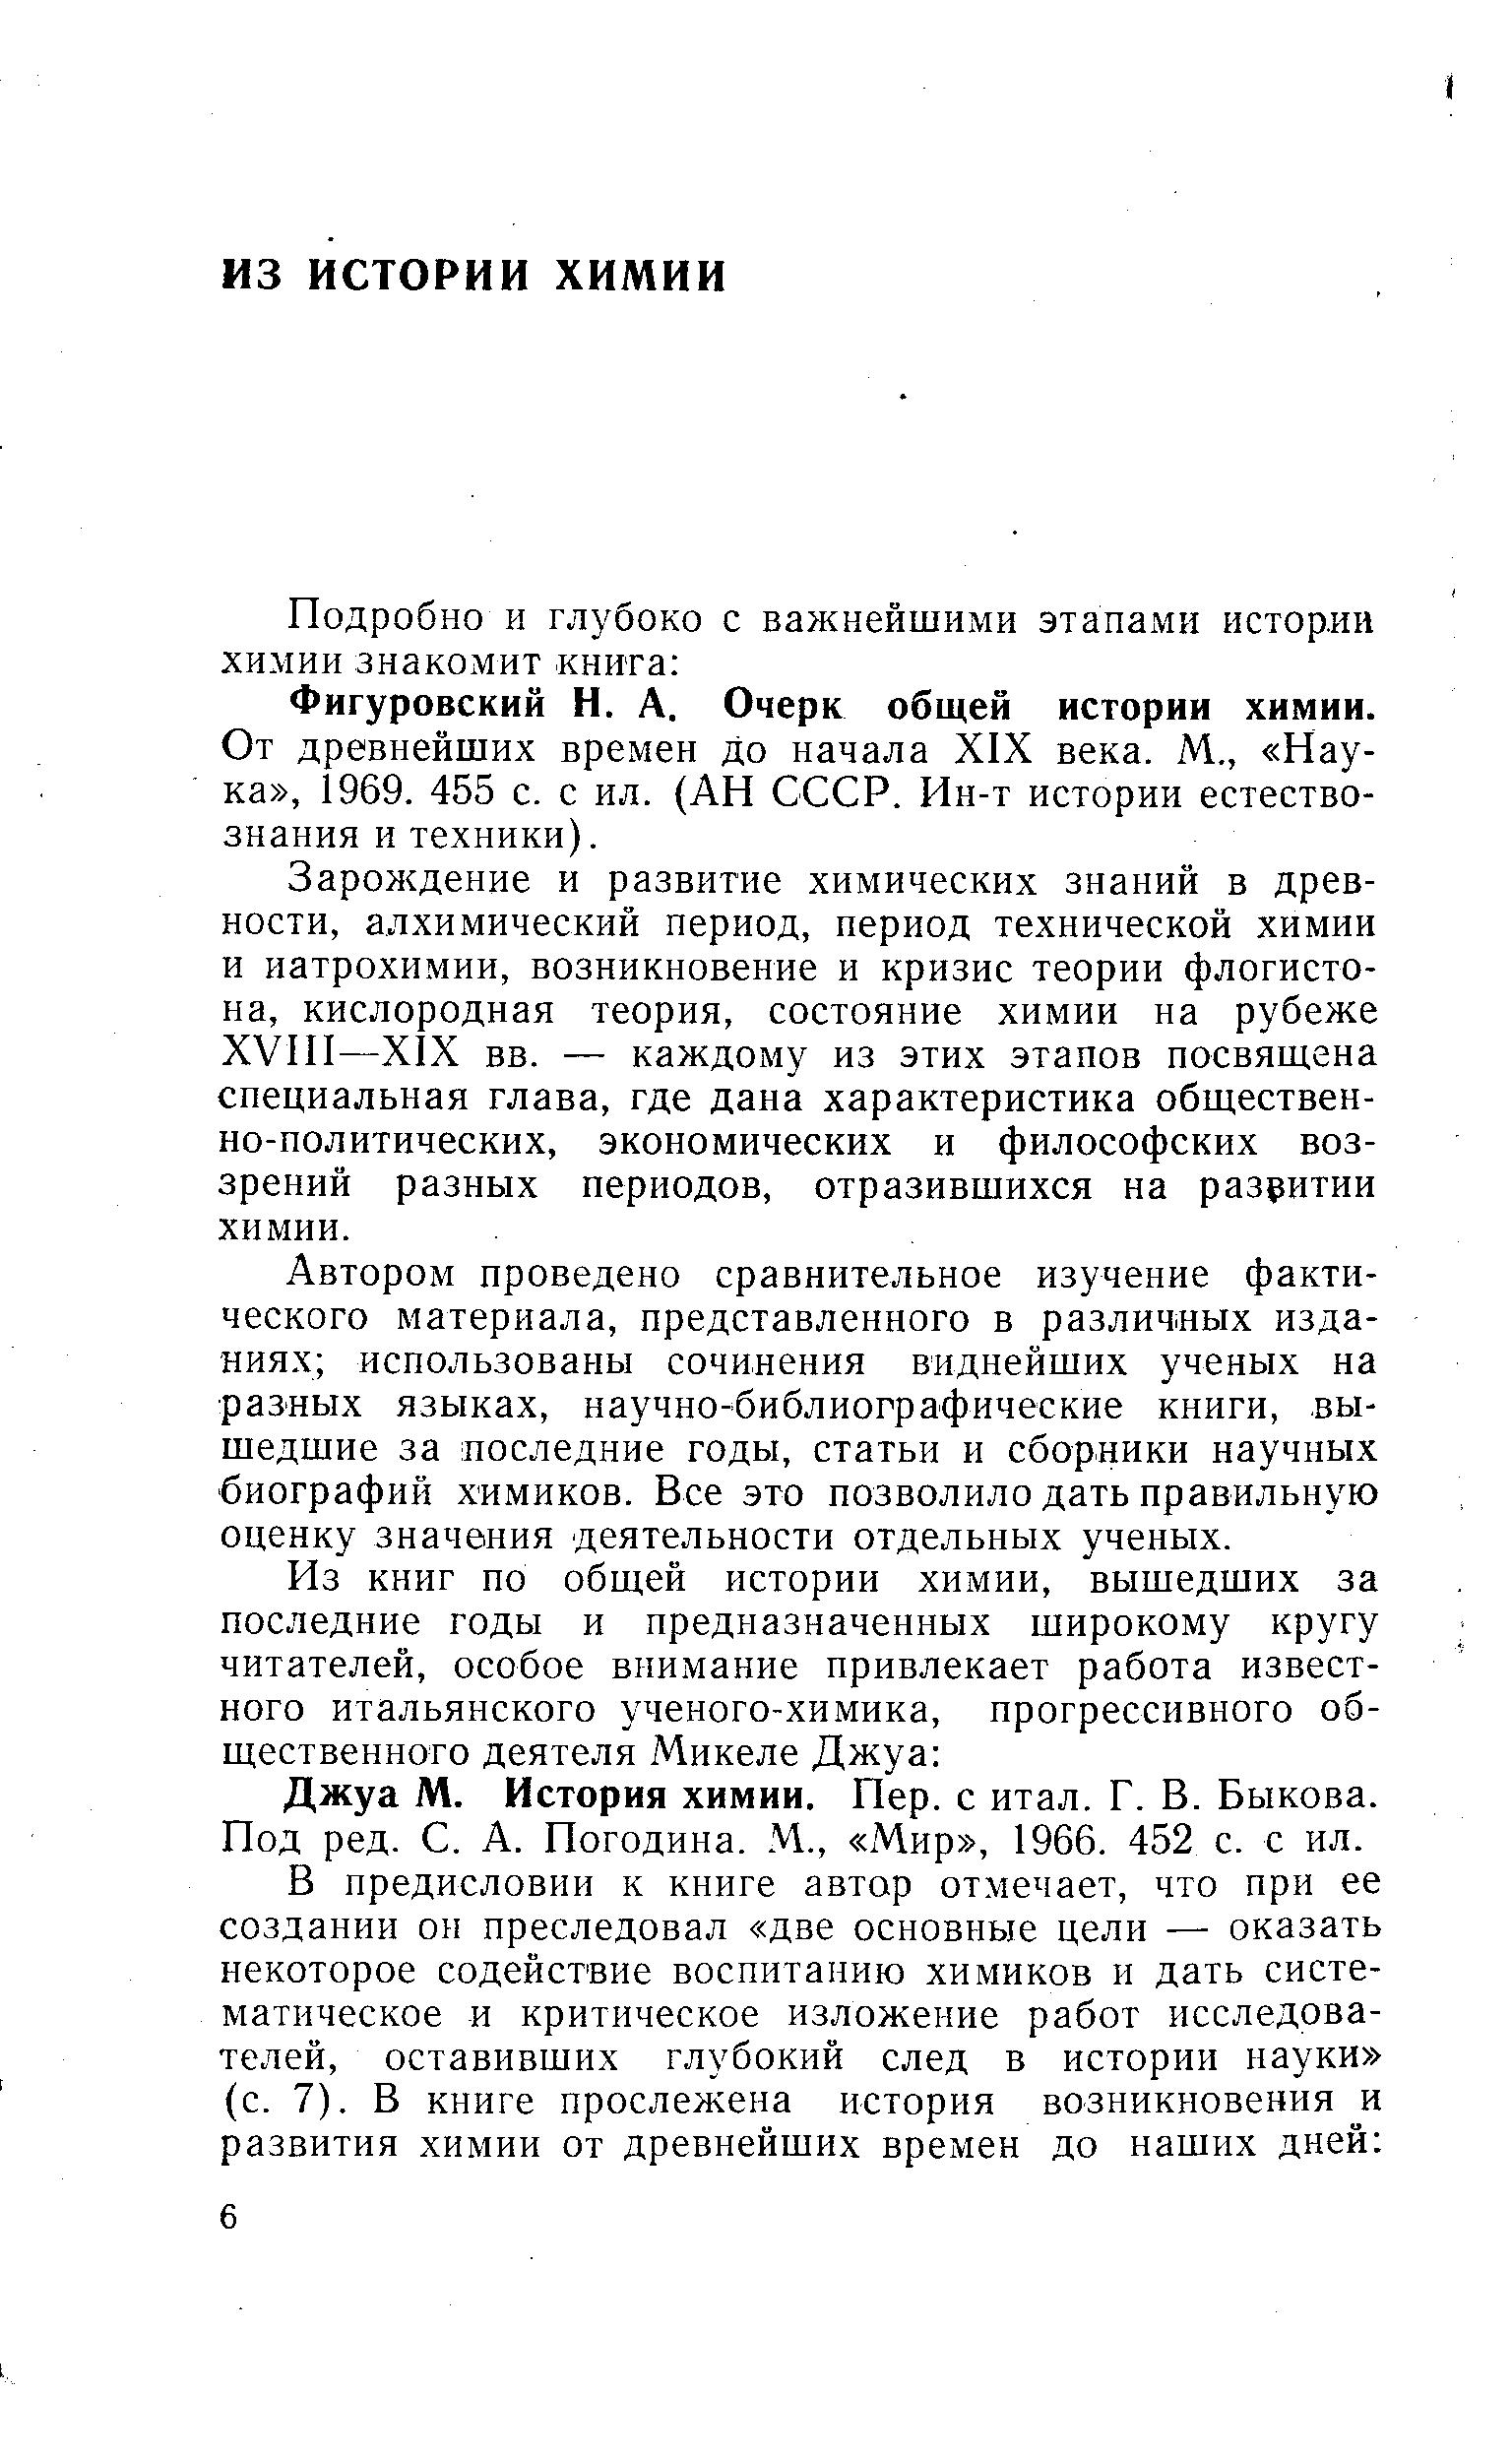 Фигуровский Н. А. Очерк общей истории химии.